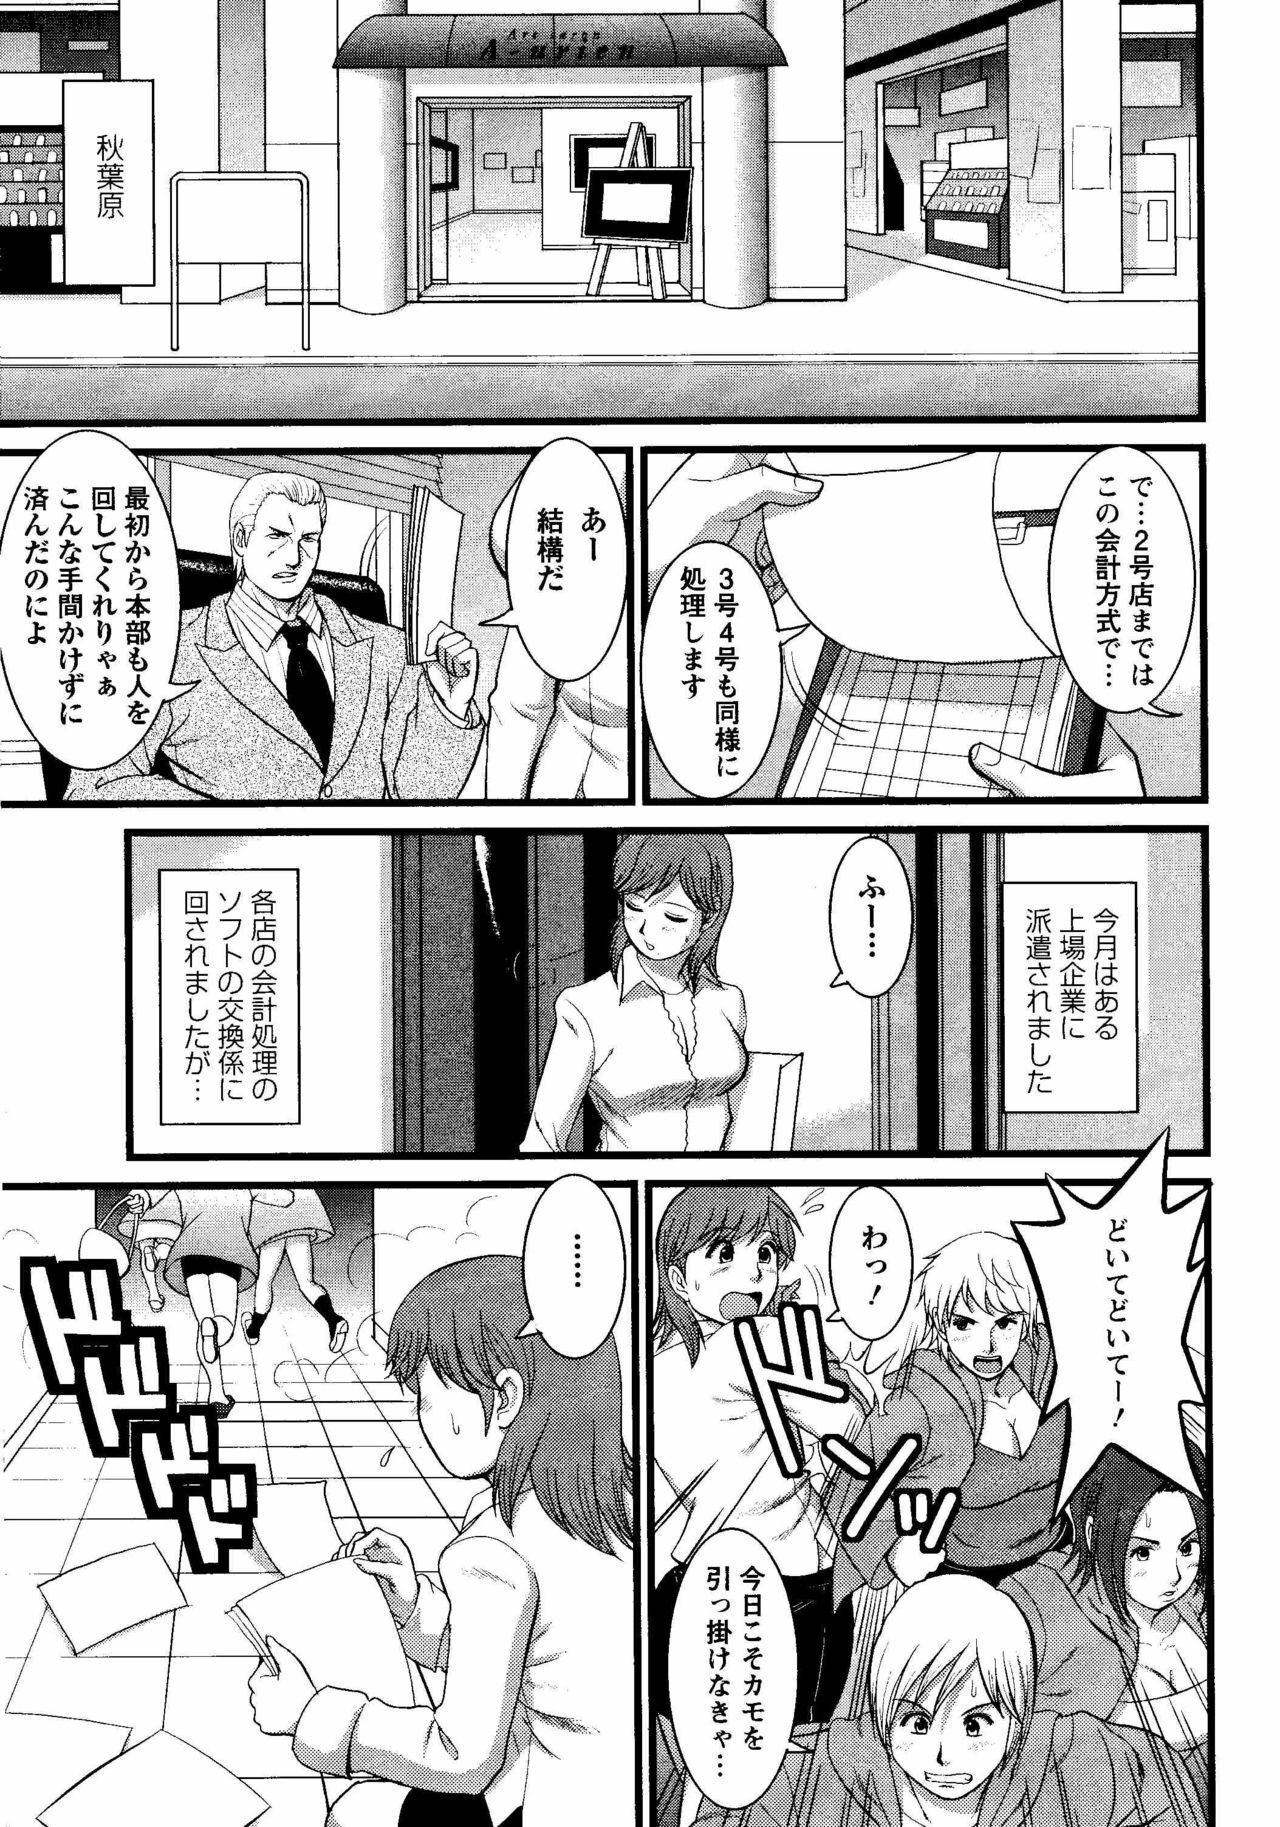 Haken no Muuko-san 8 [Saigado] page 6 full